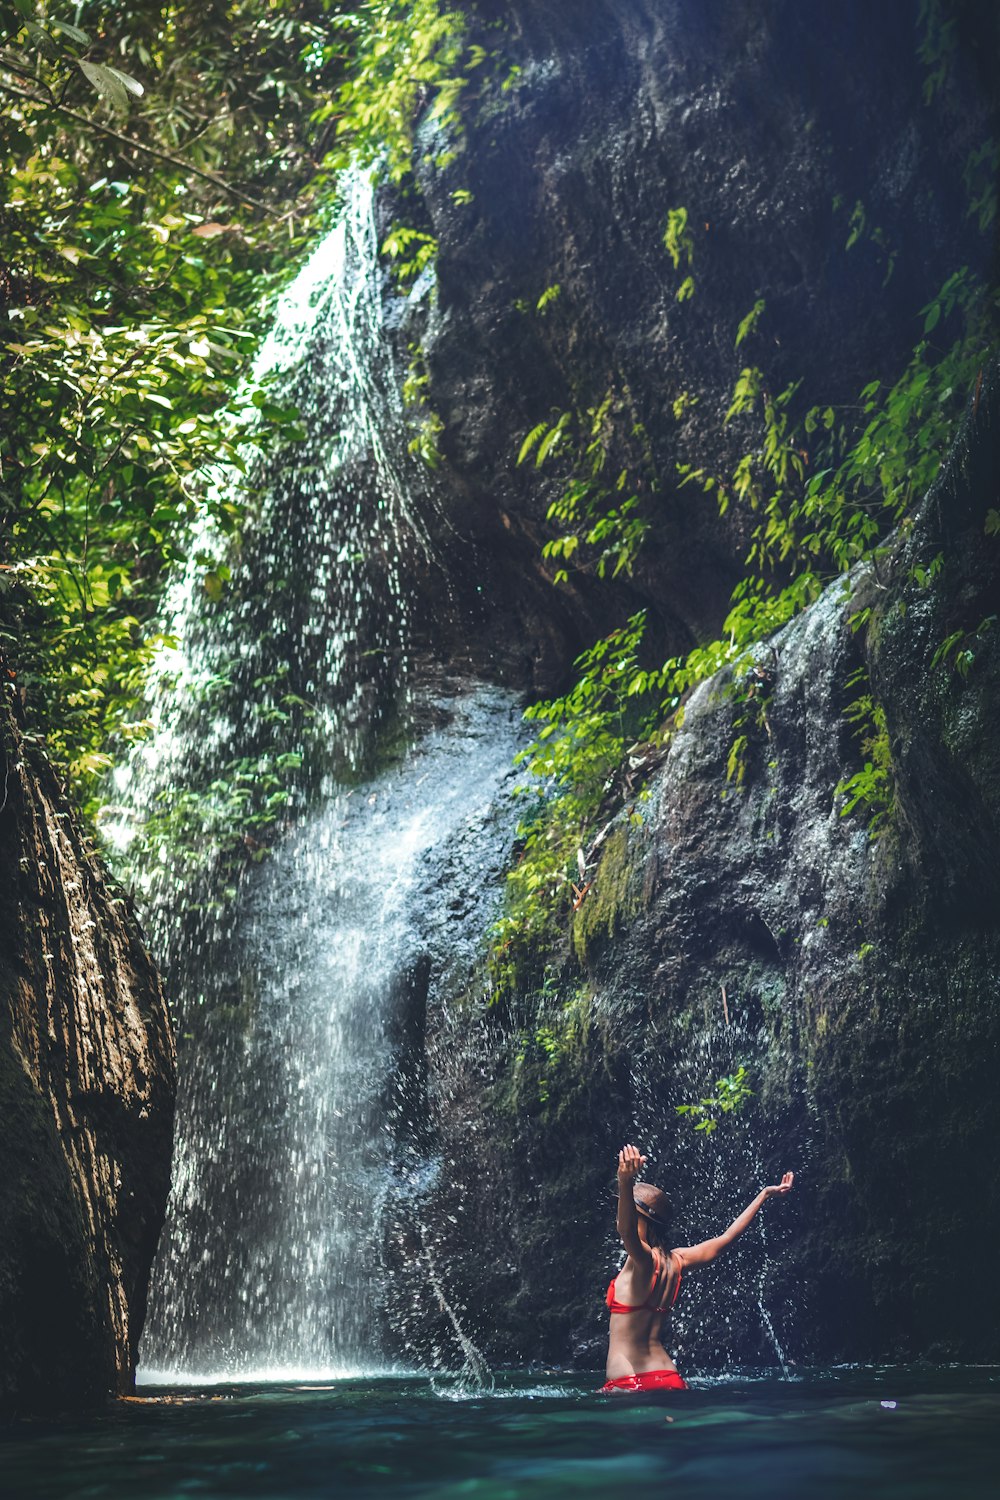 women under a waterfalls during daytime